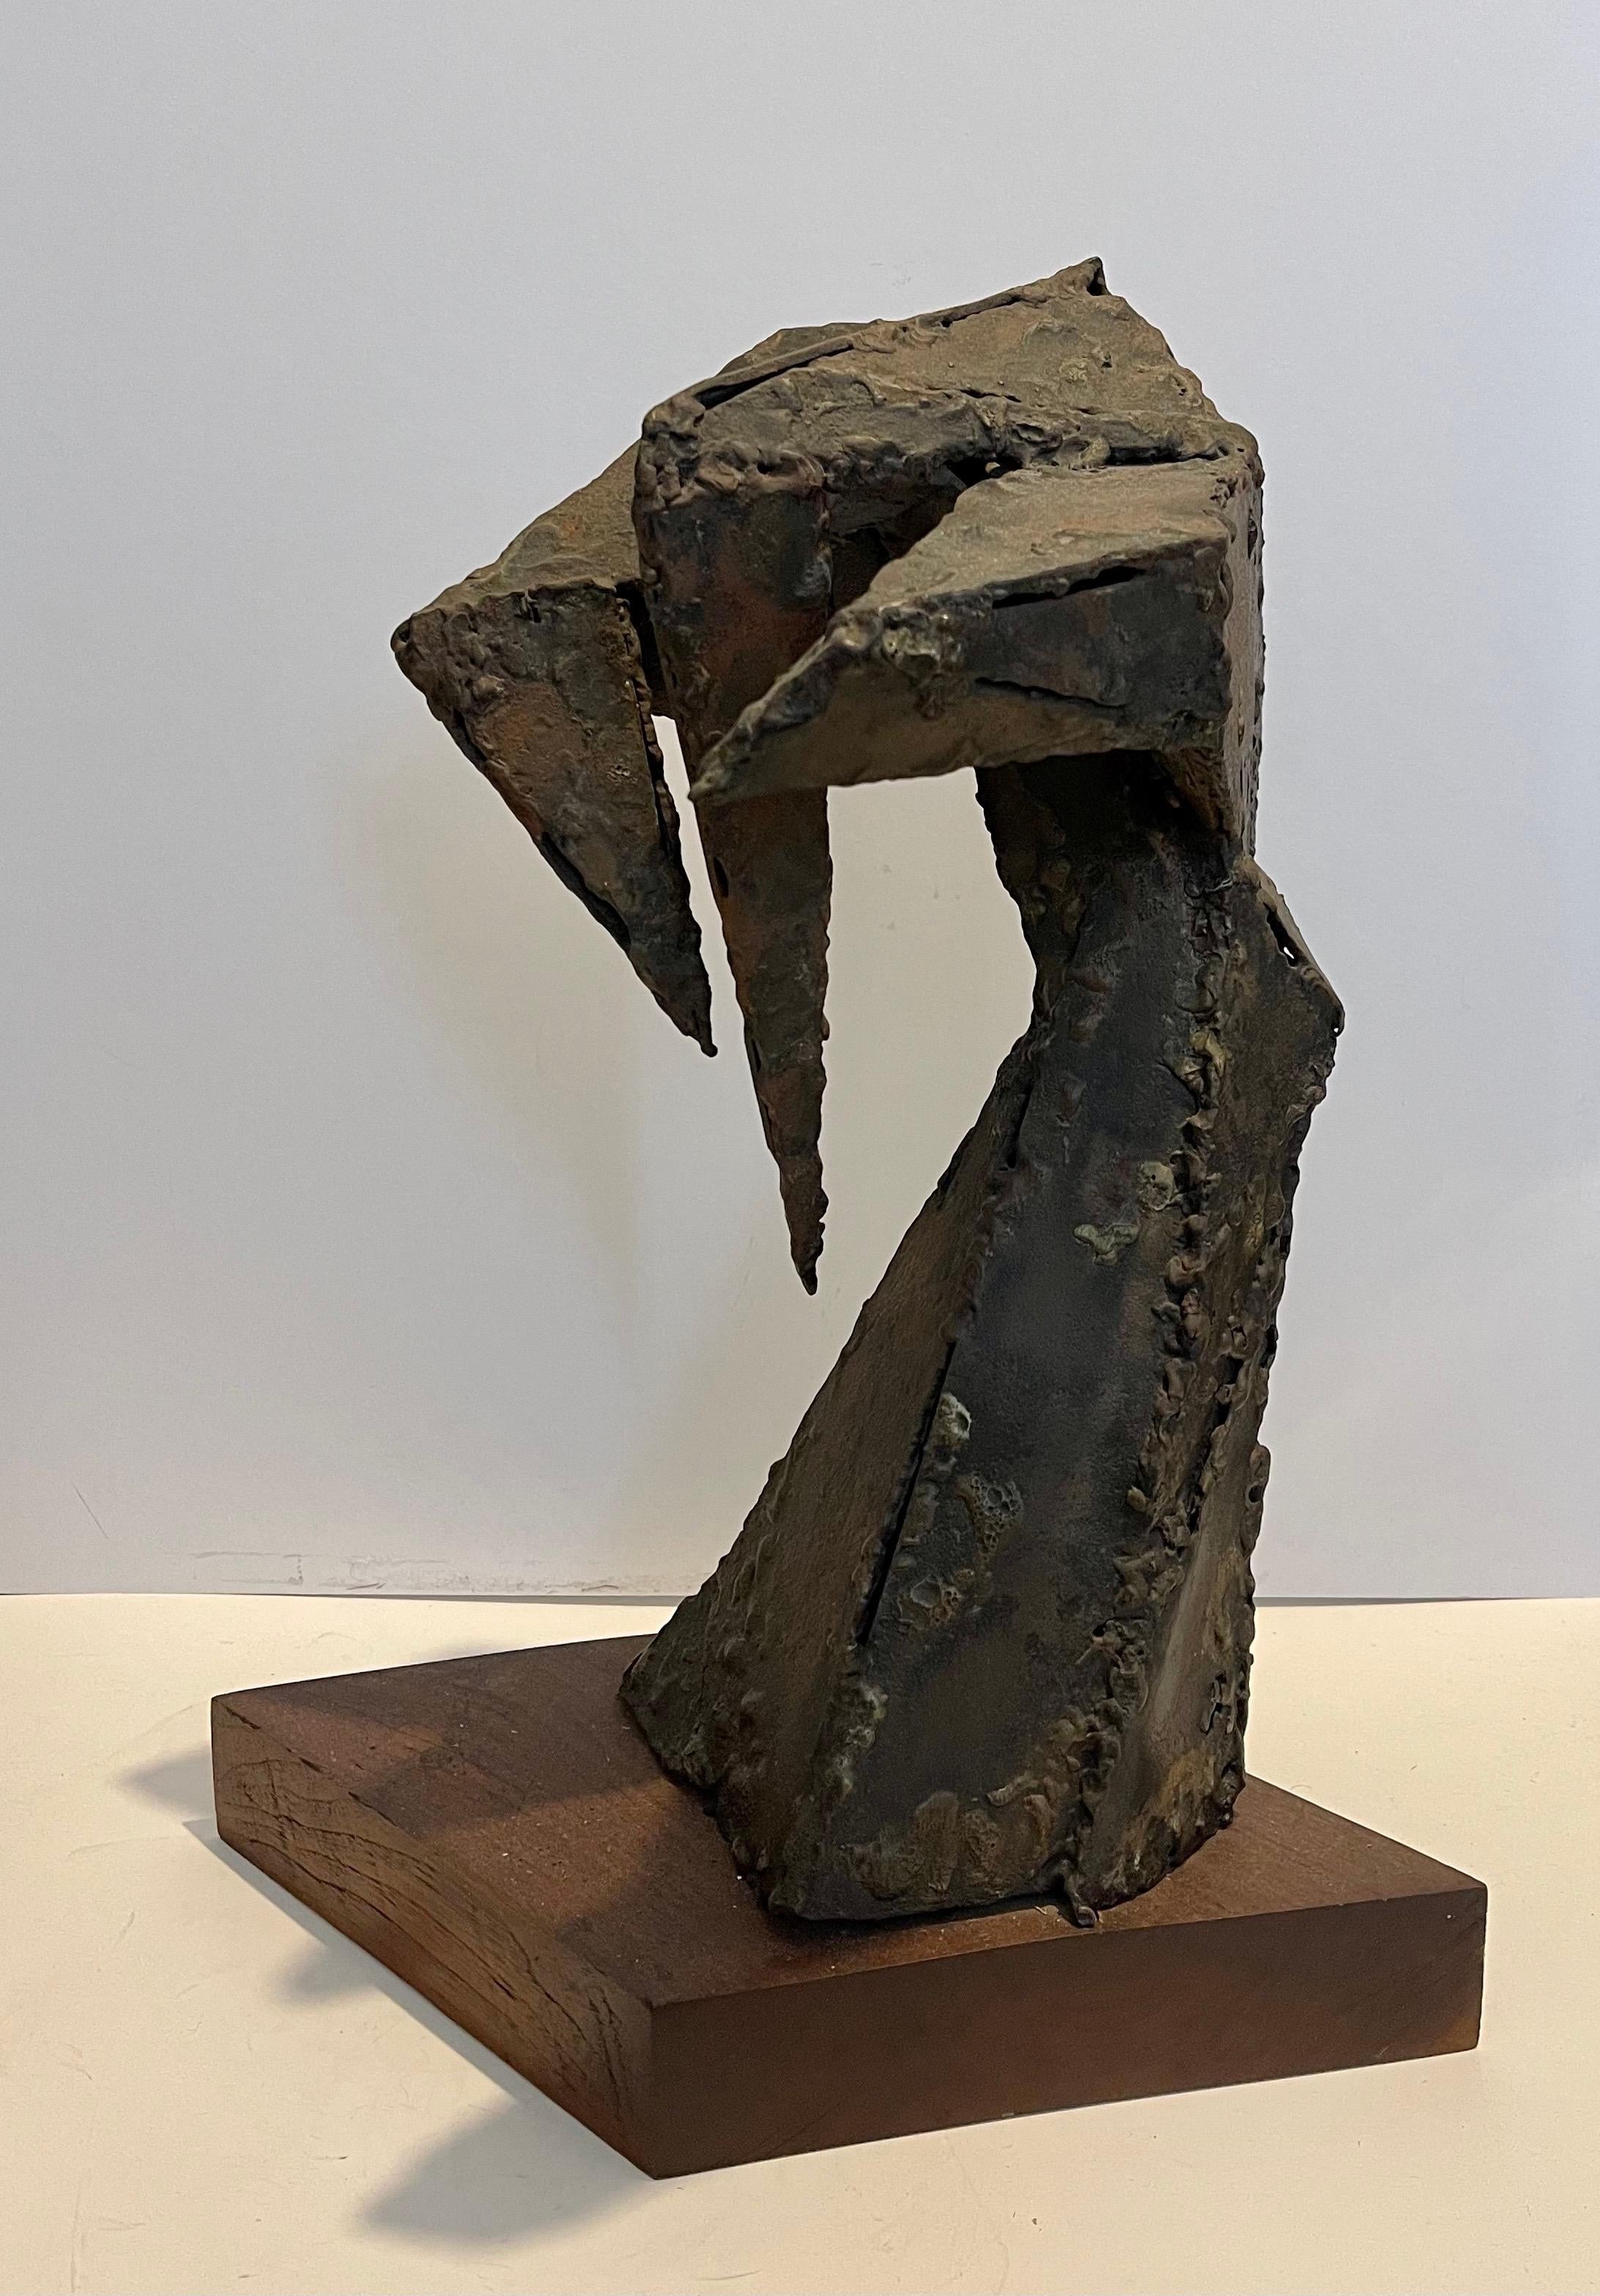 Seymour Lipton Abstract Sculpture – Abstrakt-expressionistische biomorphe geschweißte Metallskulptur, Abstrakt-expressionistische 